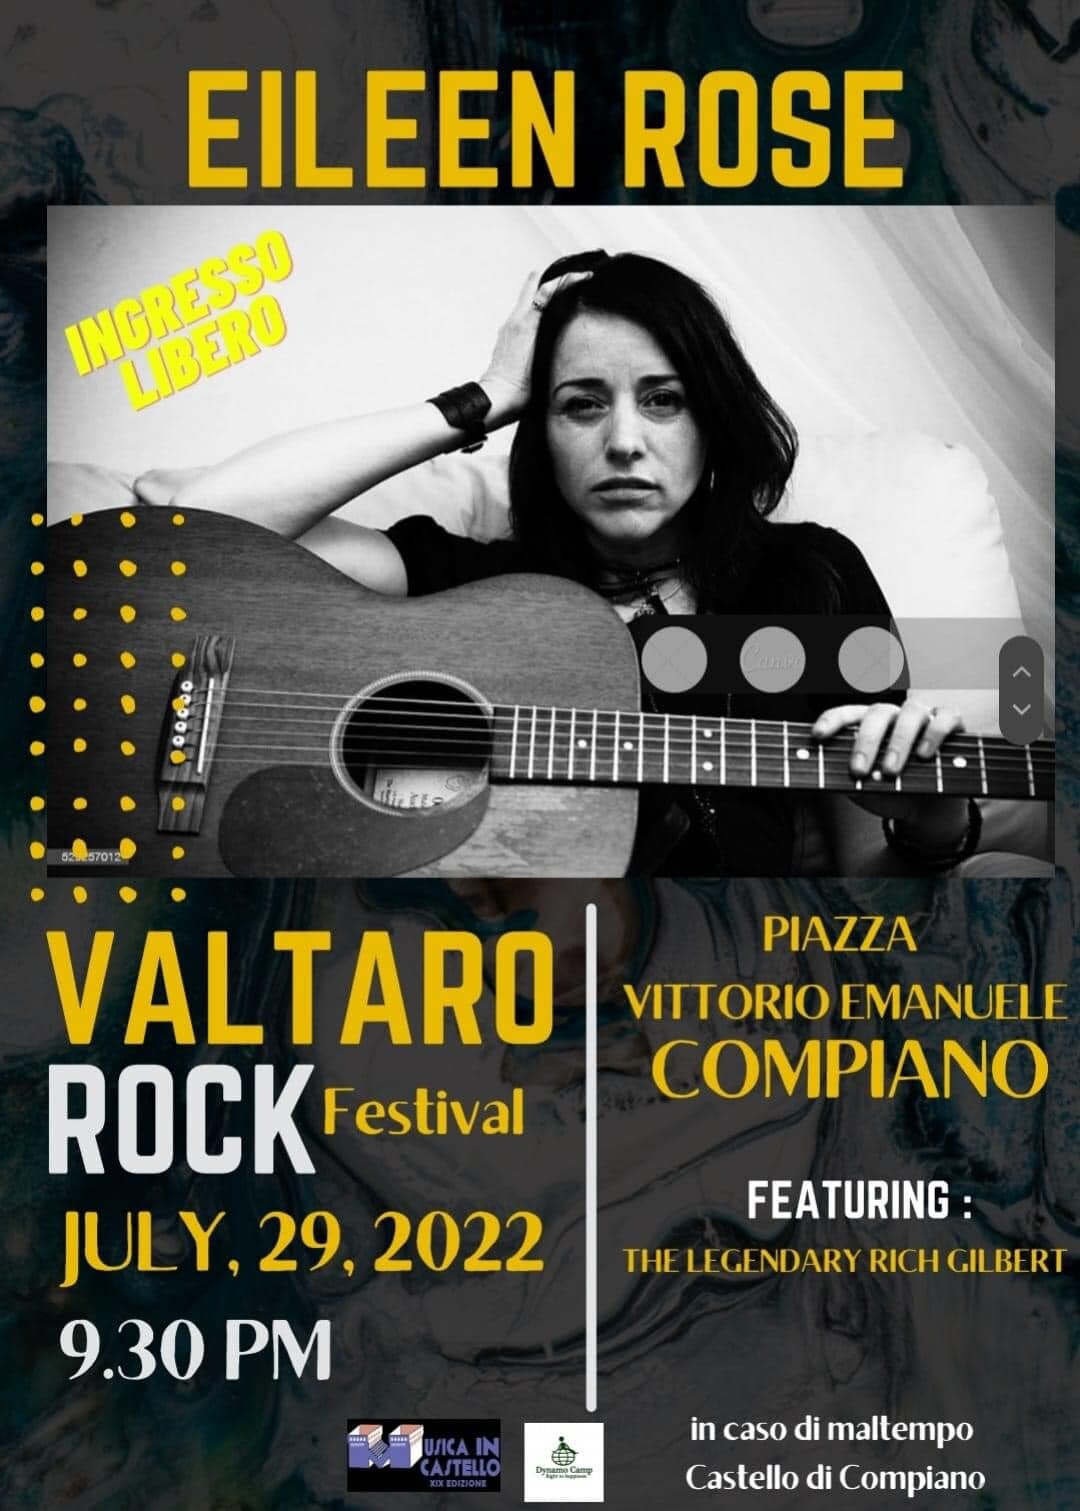 Valtaro Rock - Eileen Rose & The Legendary Rich Gilbert